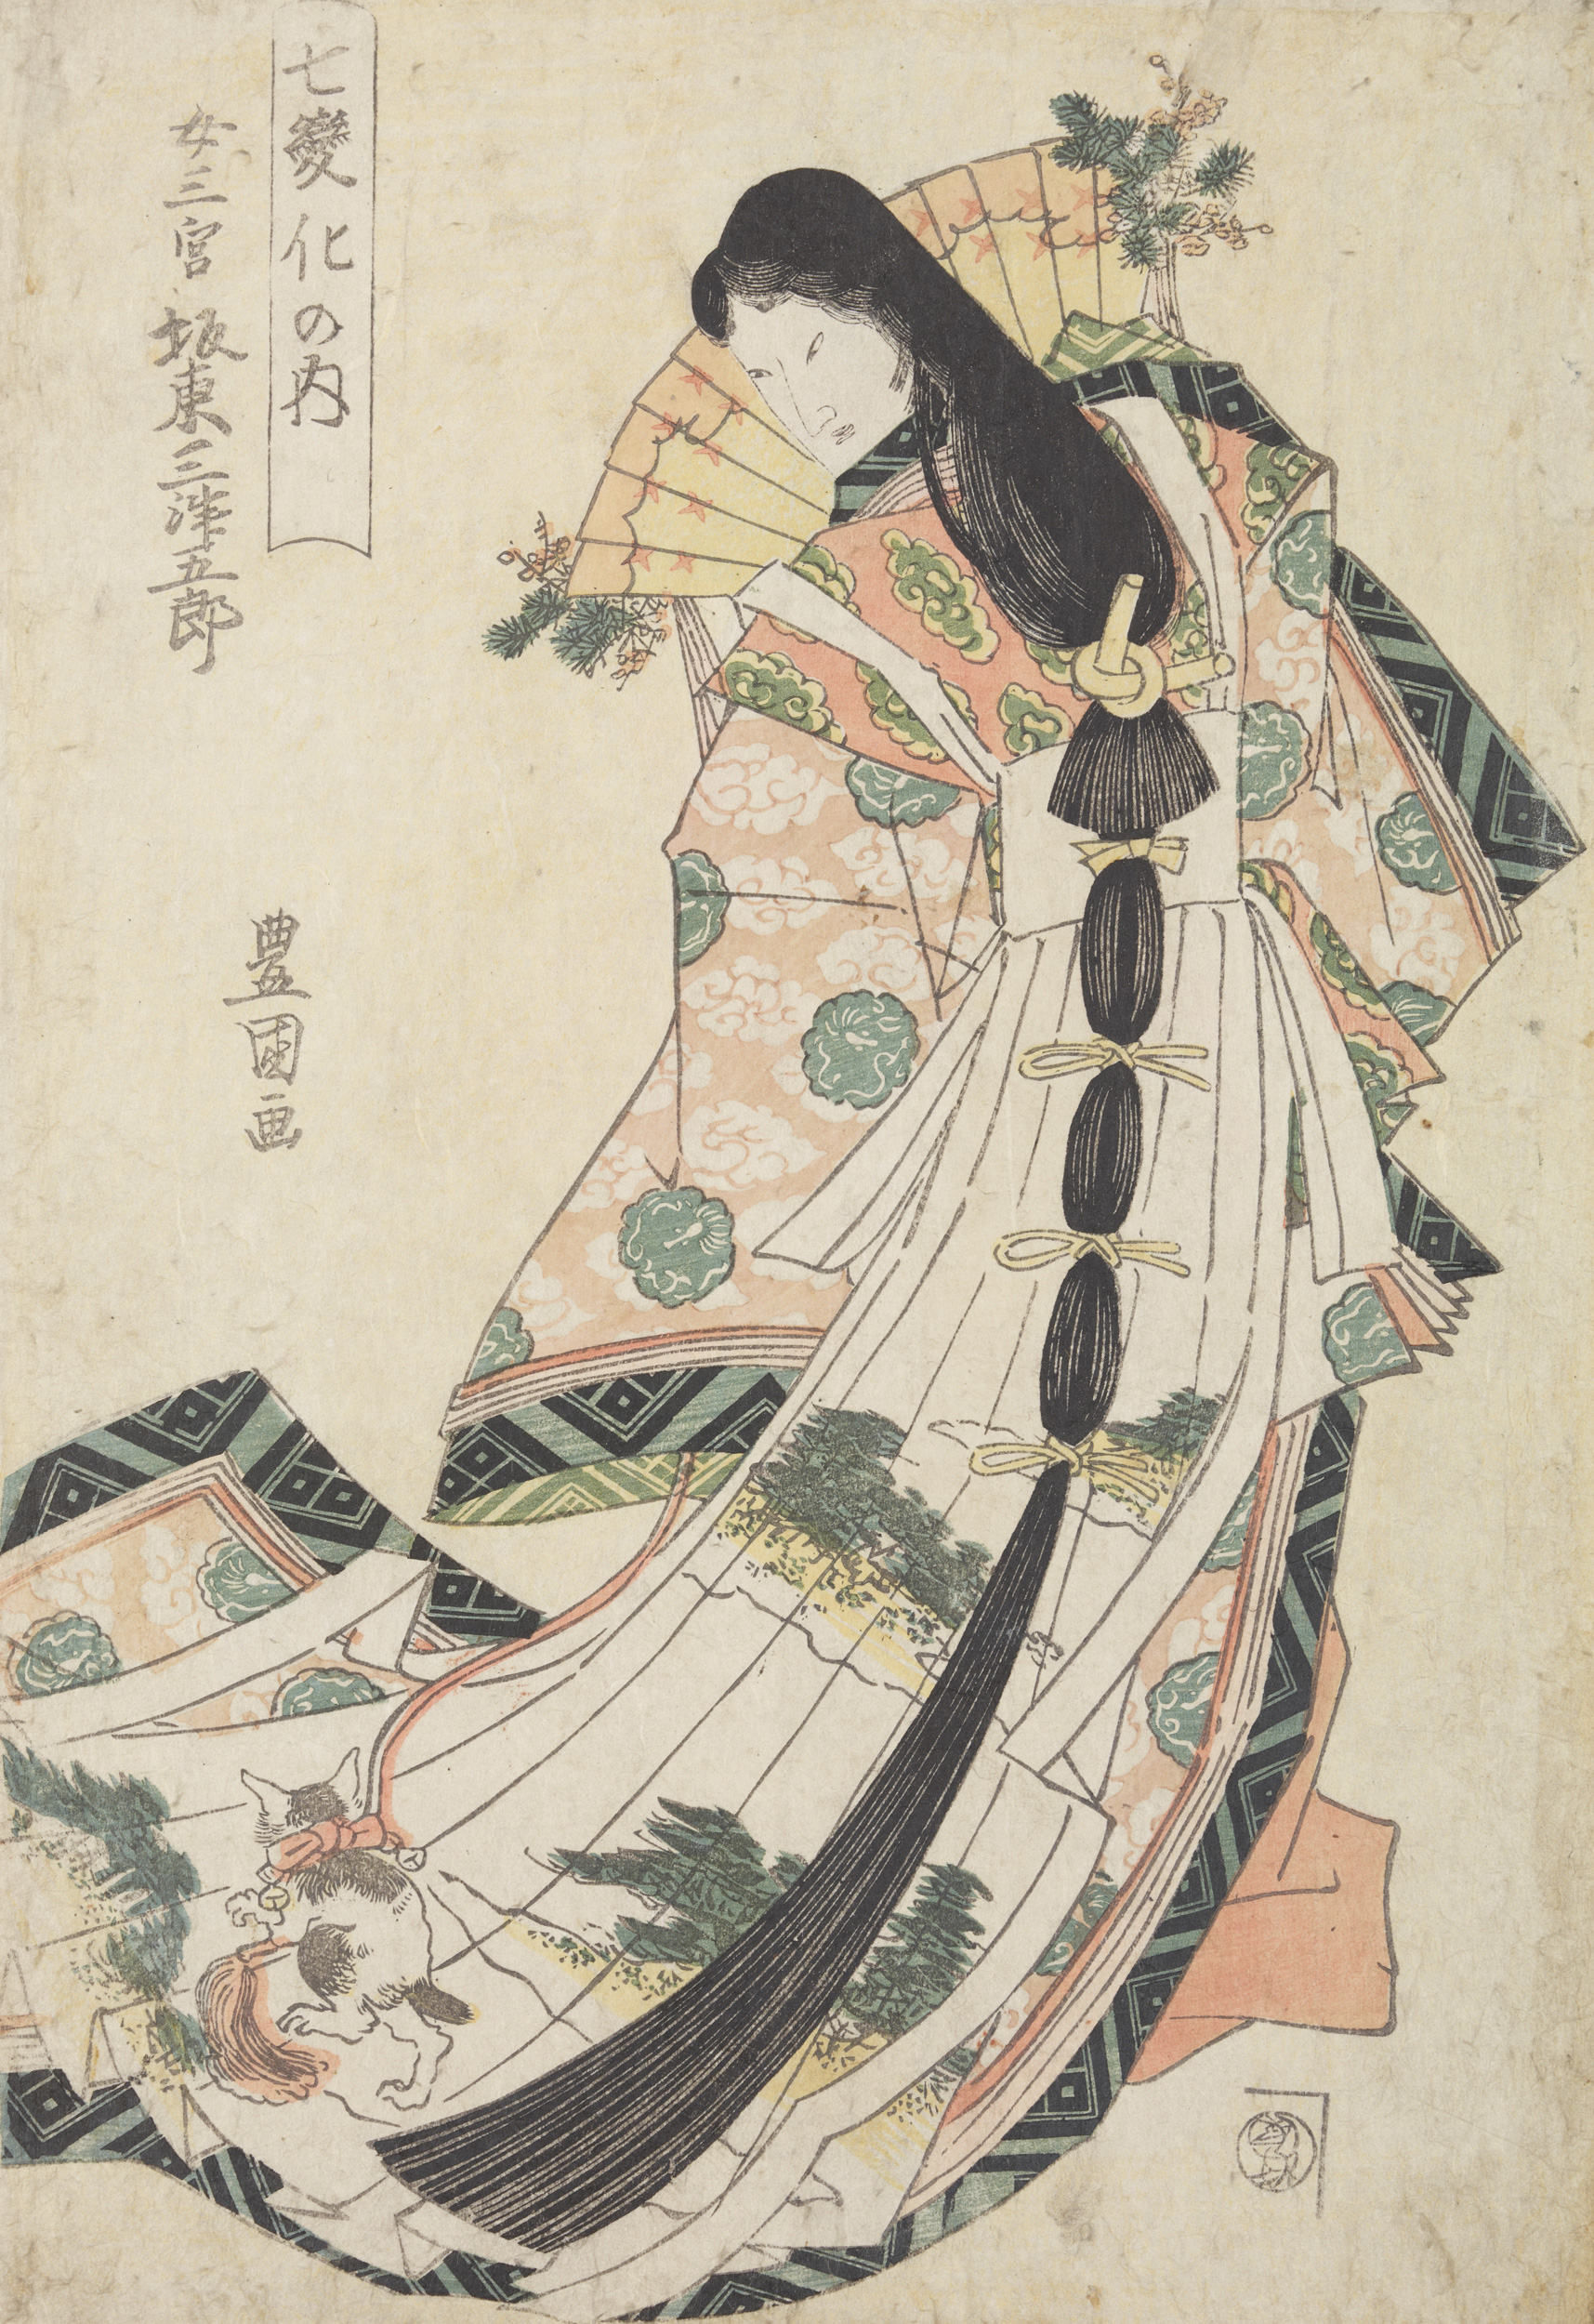 L'Acteur Bandō Mitsugoro en Onna San no miya avec un chat by Utagawa Toyokuni - 1811 